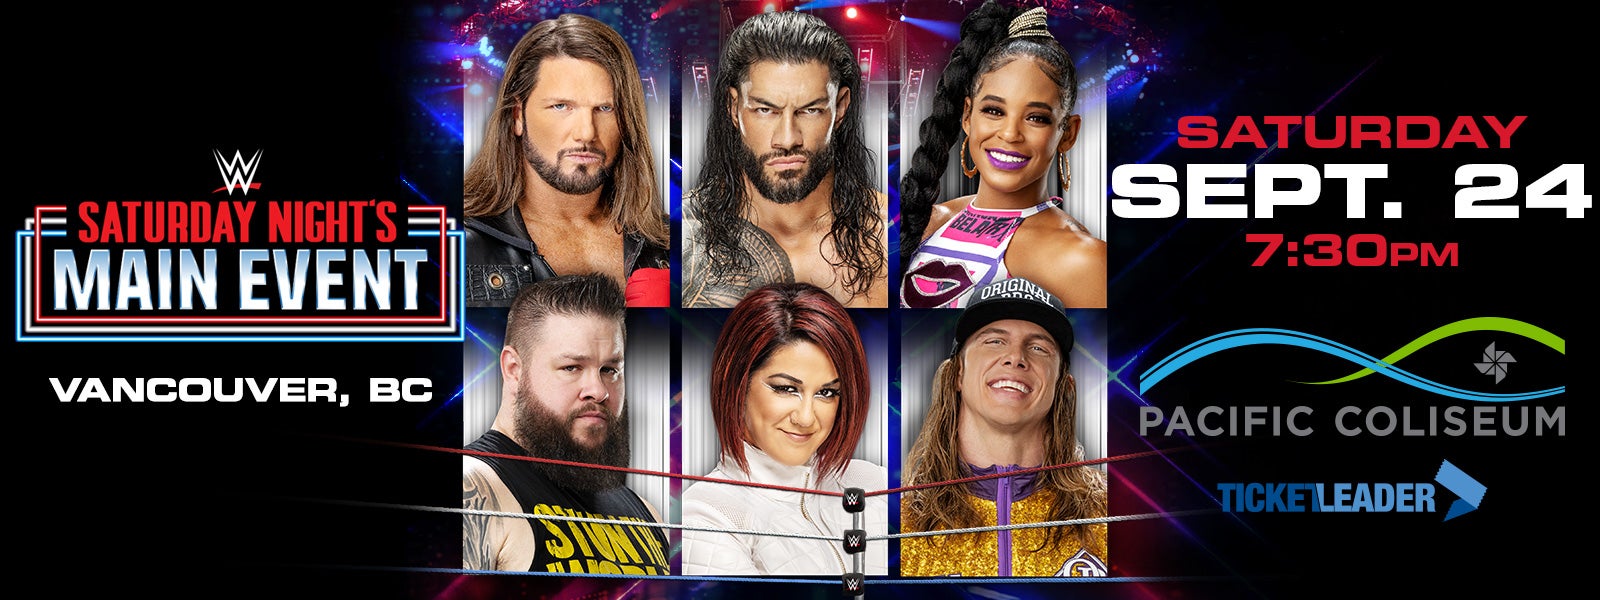 WWE SATURDAY NIGHT’S MAIN EVENT